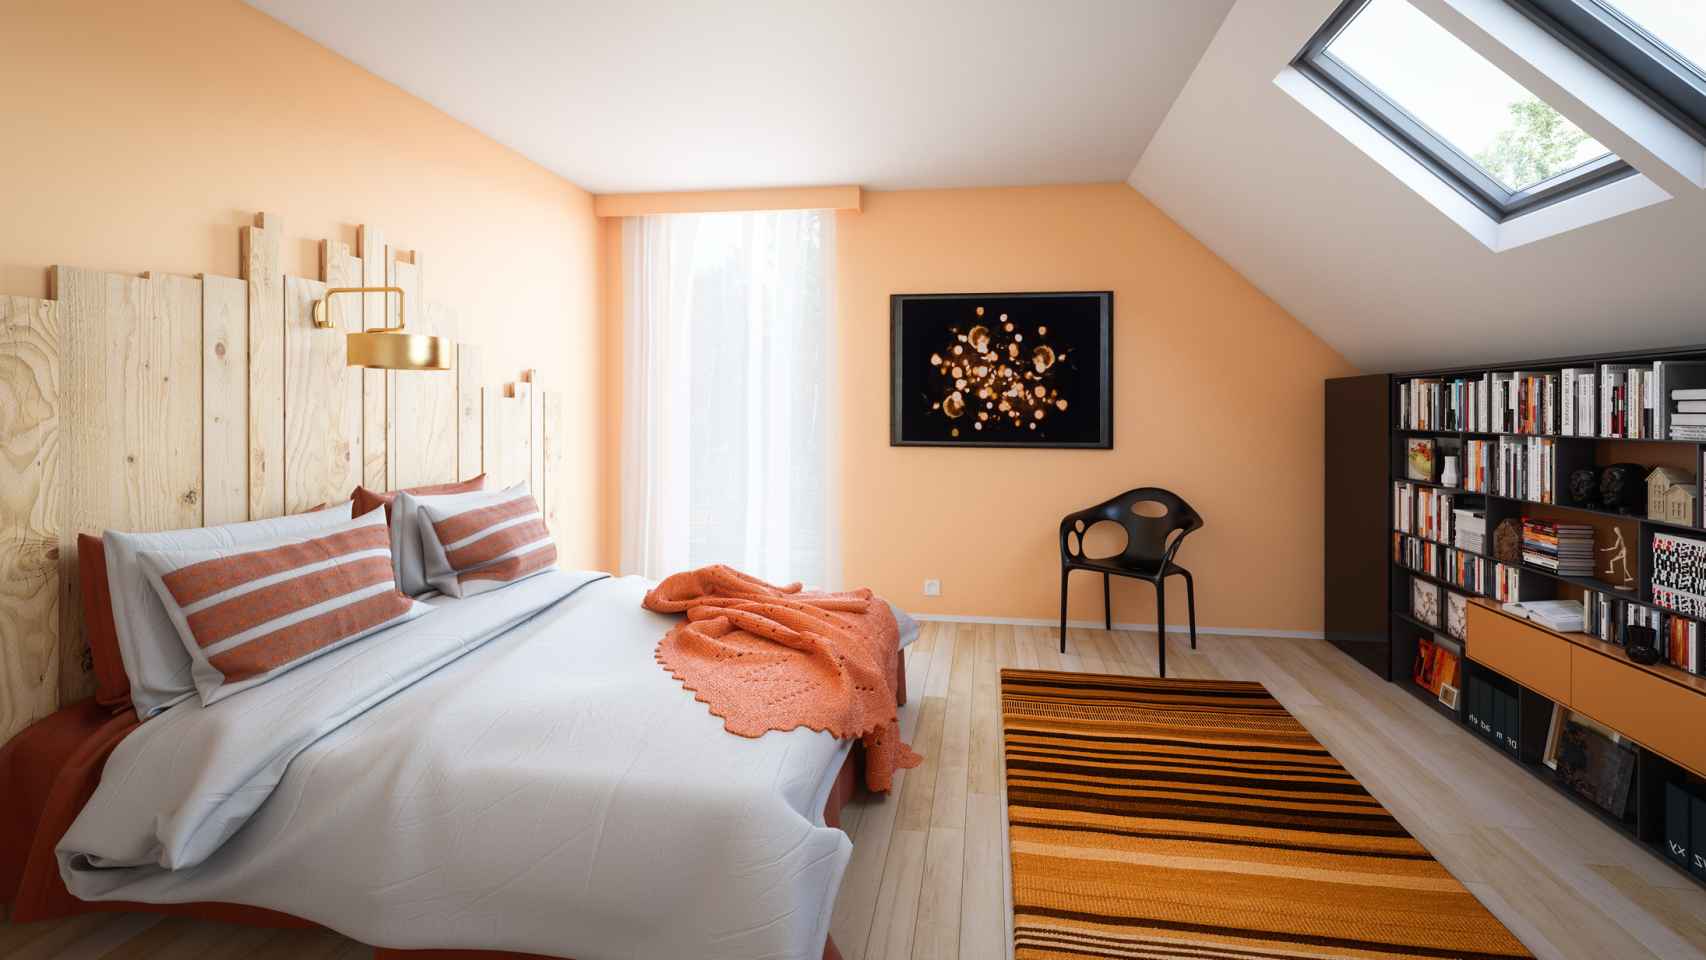 Dormitorio decorado y pintado en naranja.